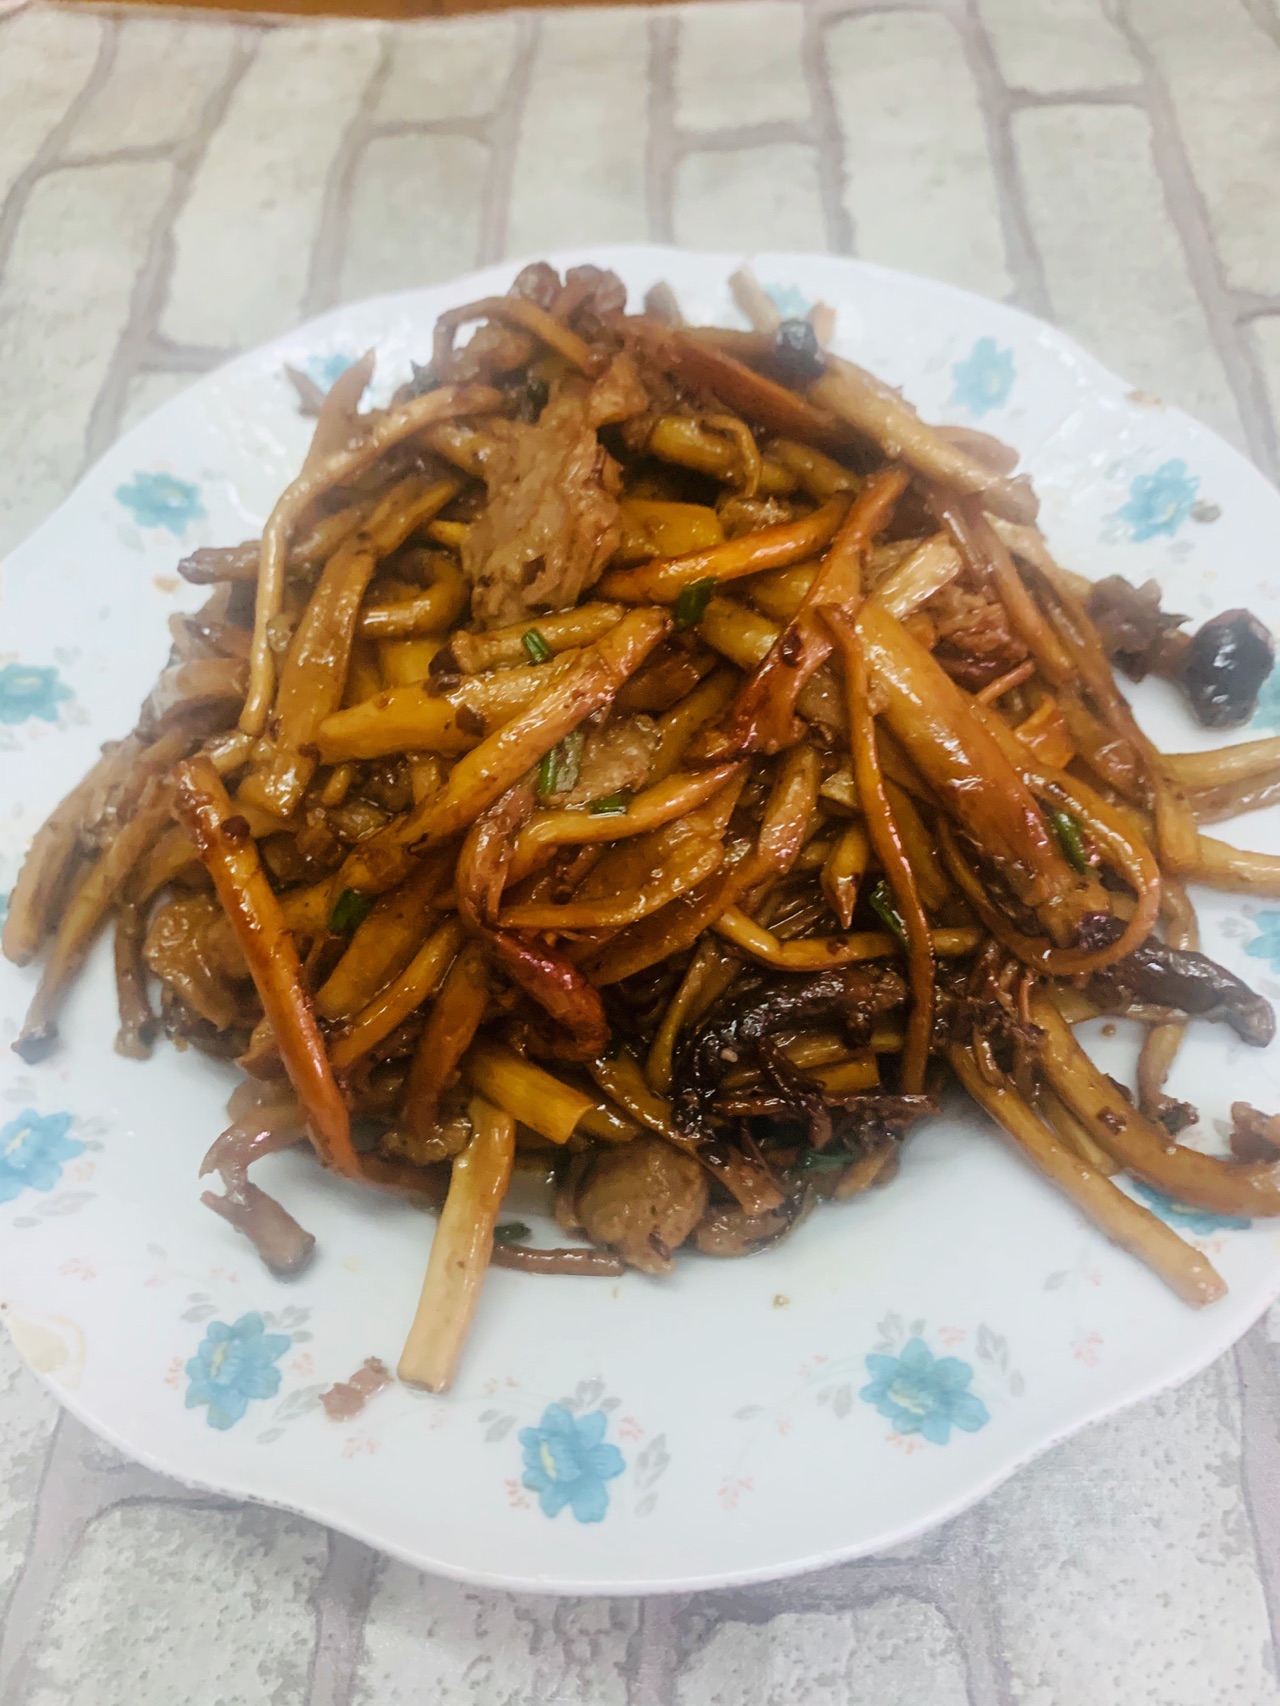 茶树菇炒肉怎么做_茶树菇炒肉的做法_豆果美食